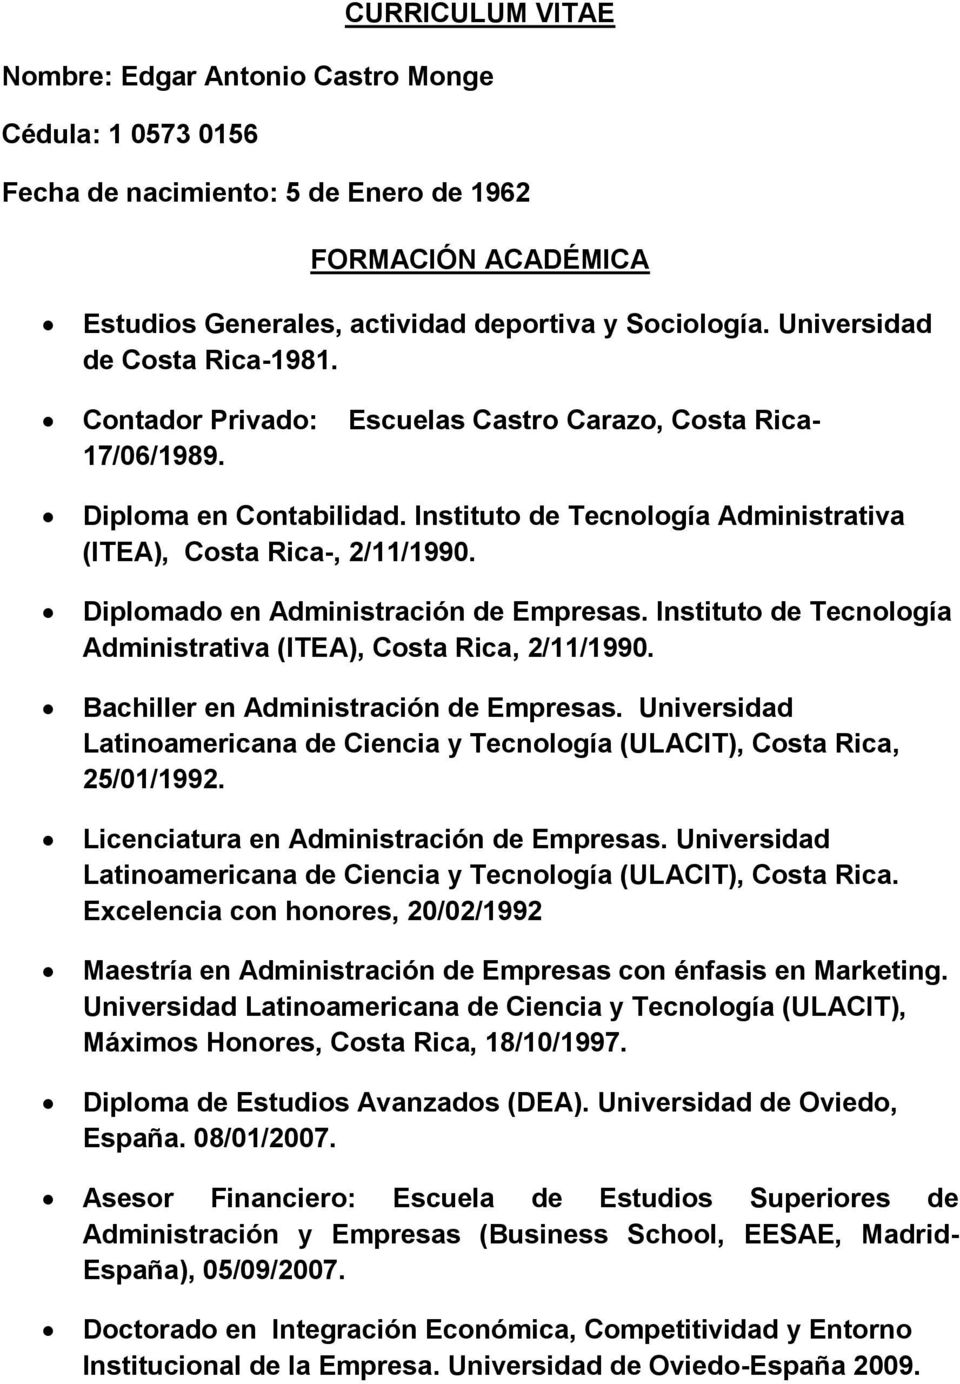 Diplomado en Administración de Empresas. Instituto de Tecnología Administrativa (ITEA), Costa Rica, 2/11/1990. Bachiller en Administración de Empresas.